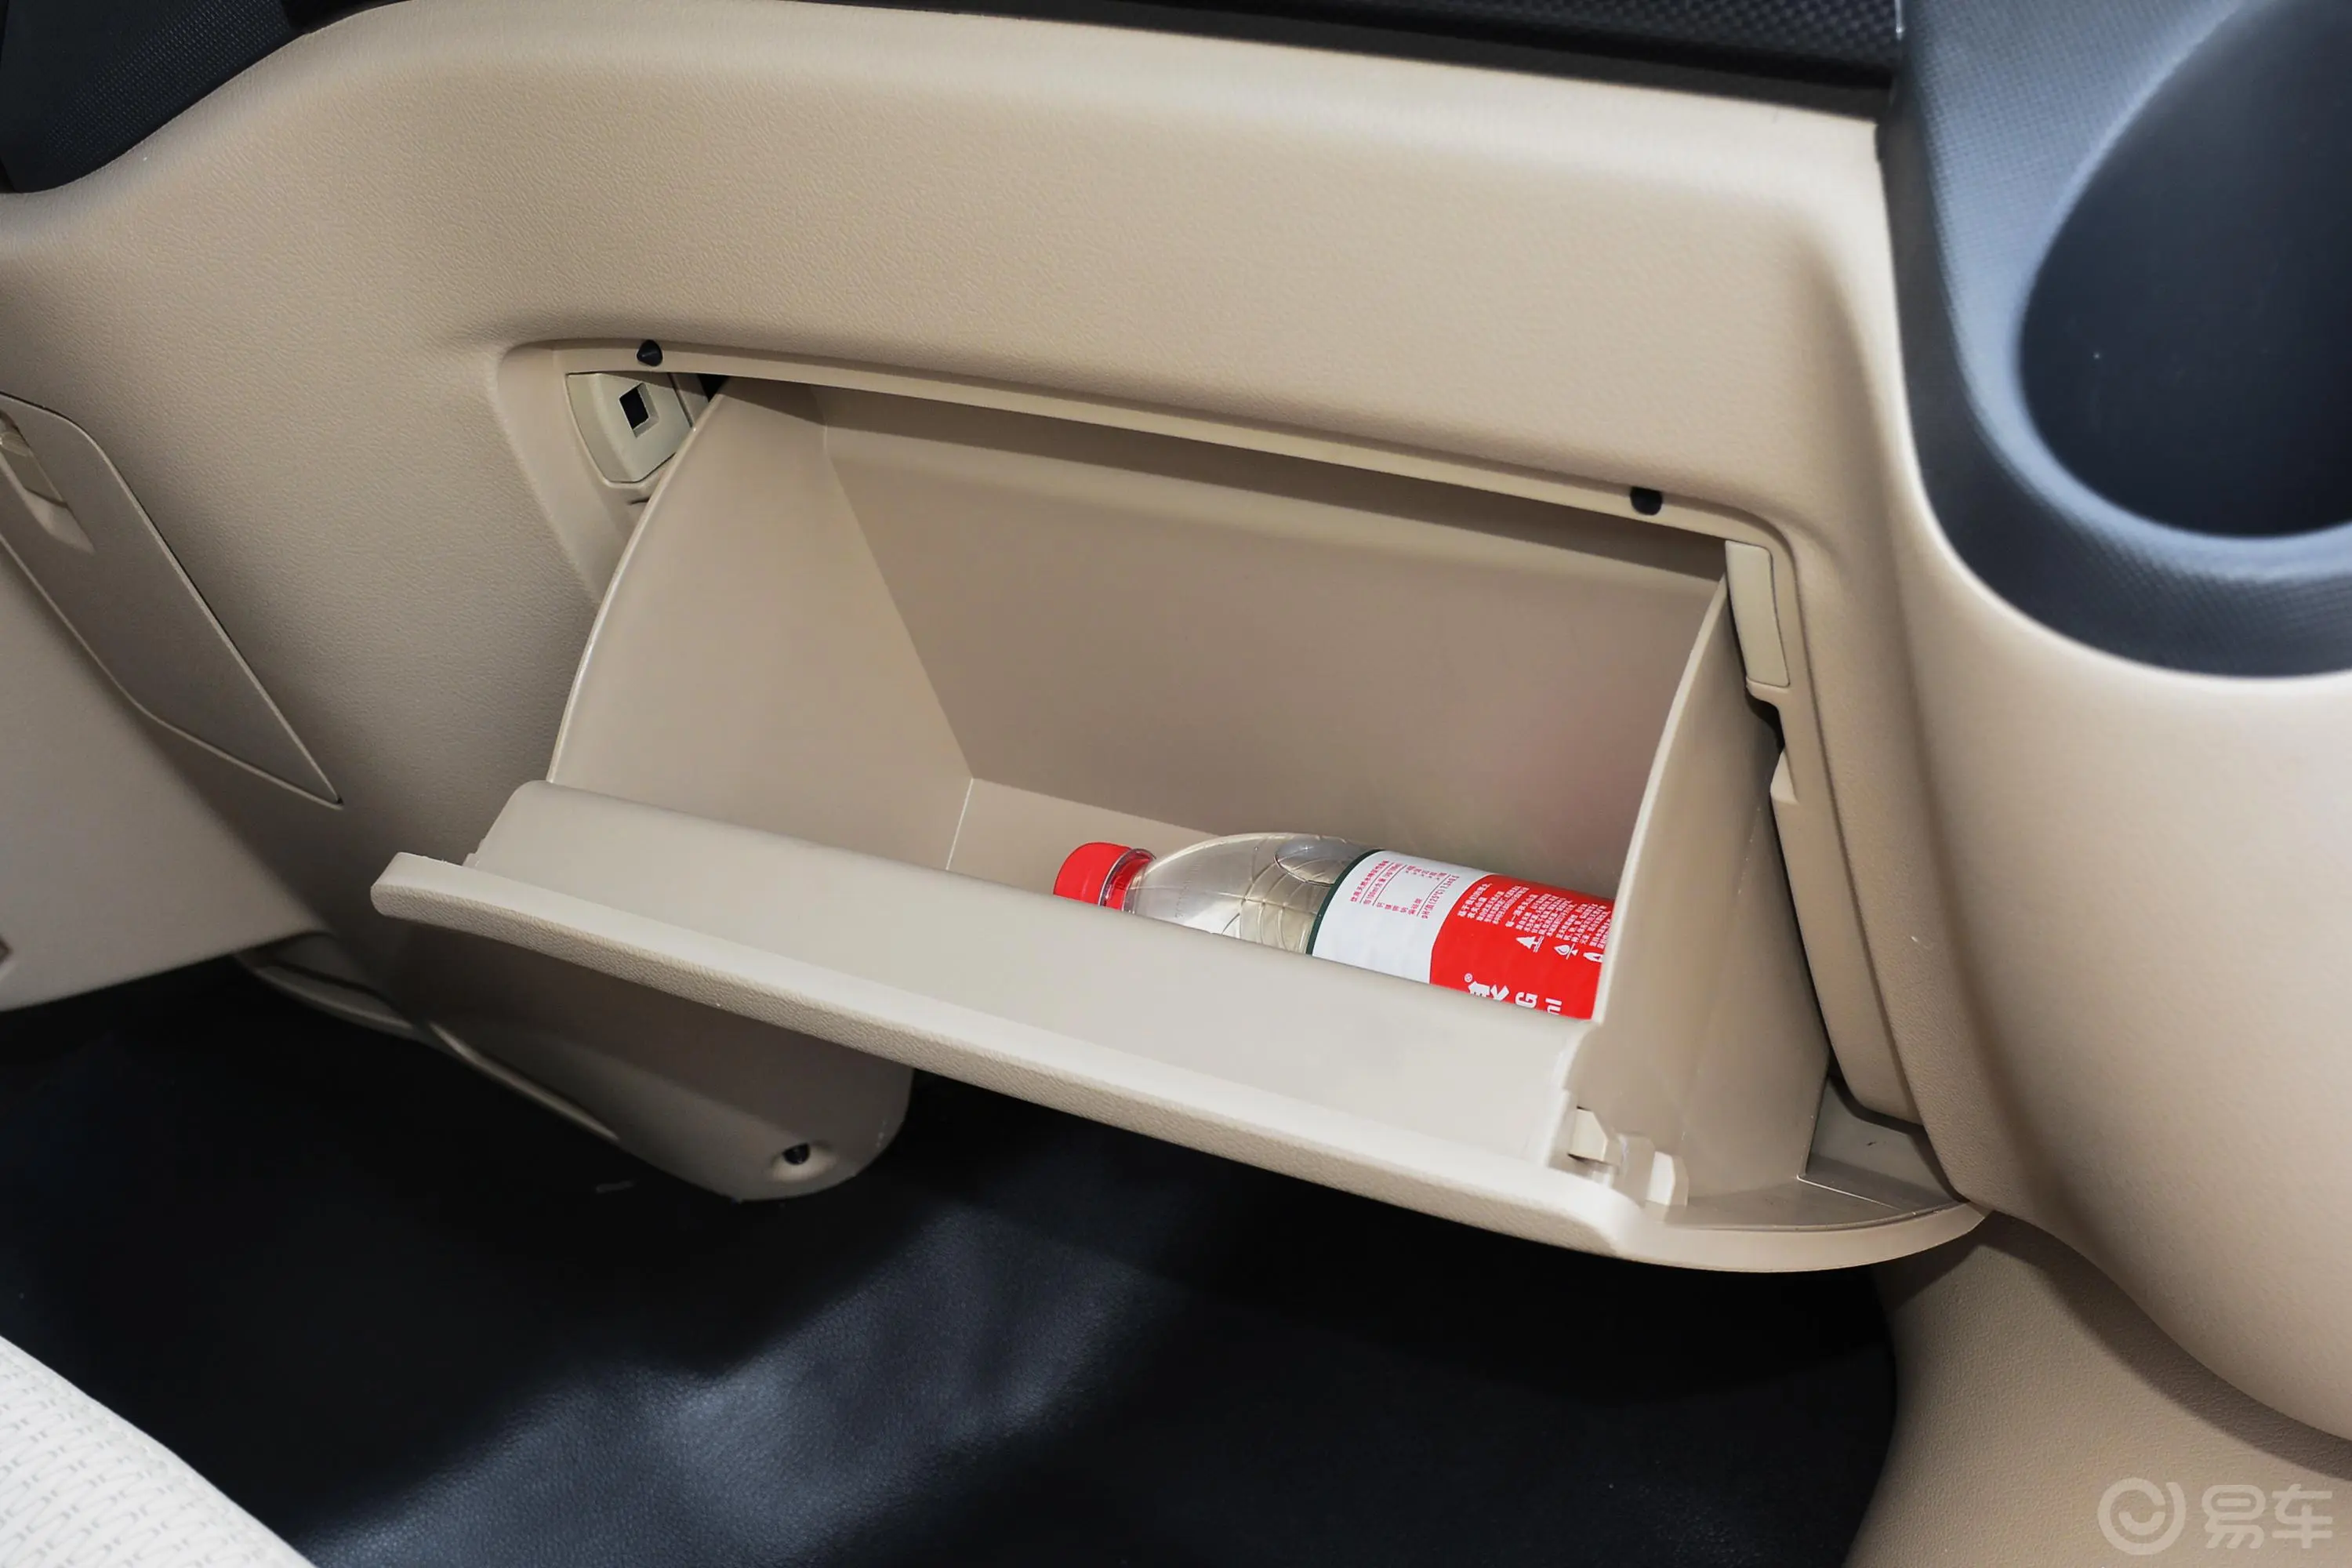 图雅诺商旅版小客 康明斯 2.8T 手动加长轴新高顶高级客车 14座手套箱空间水瓶横置